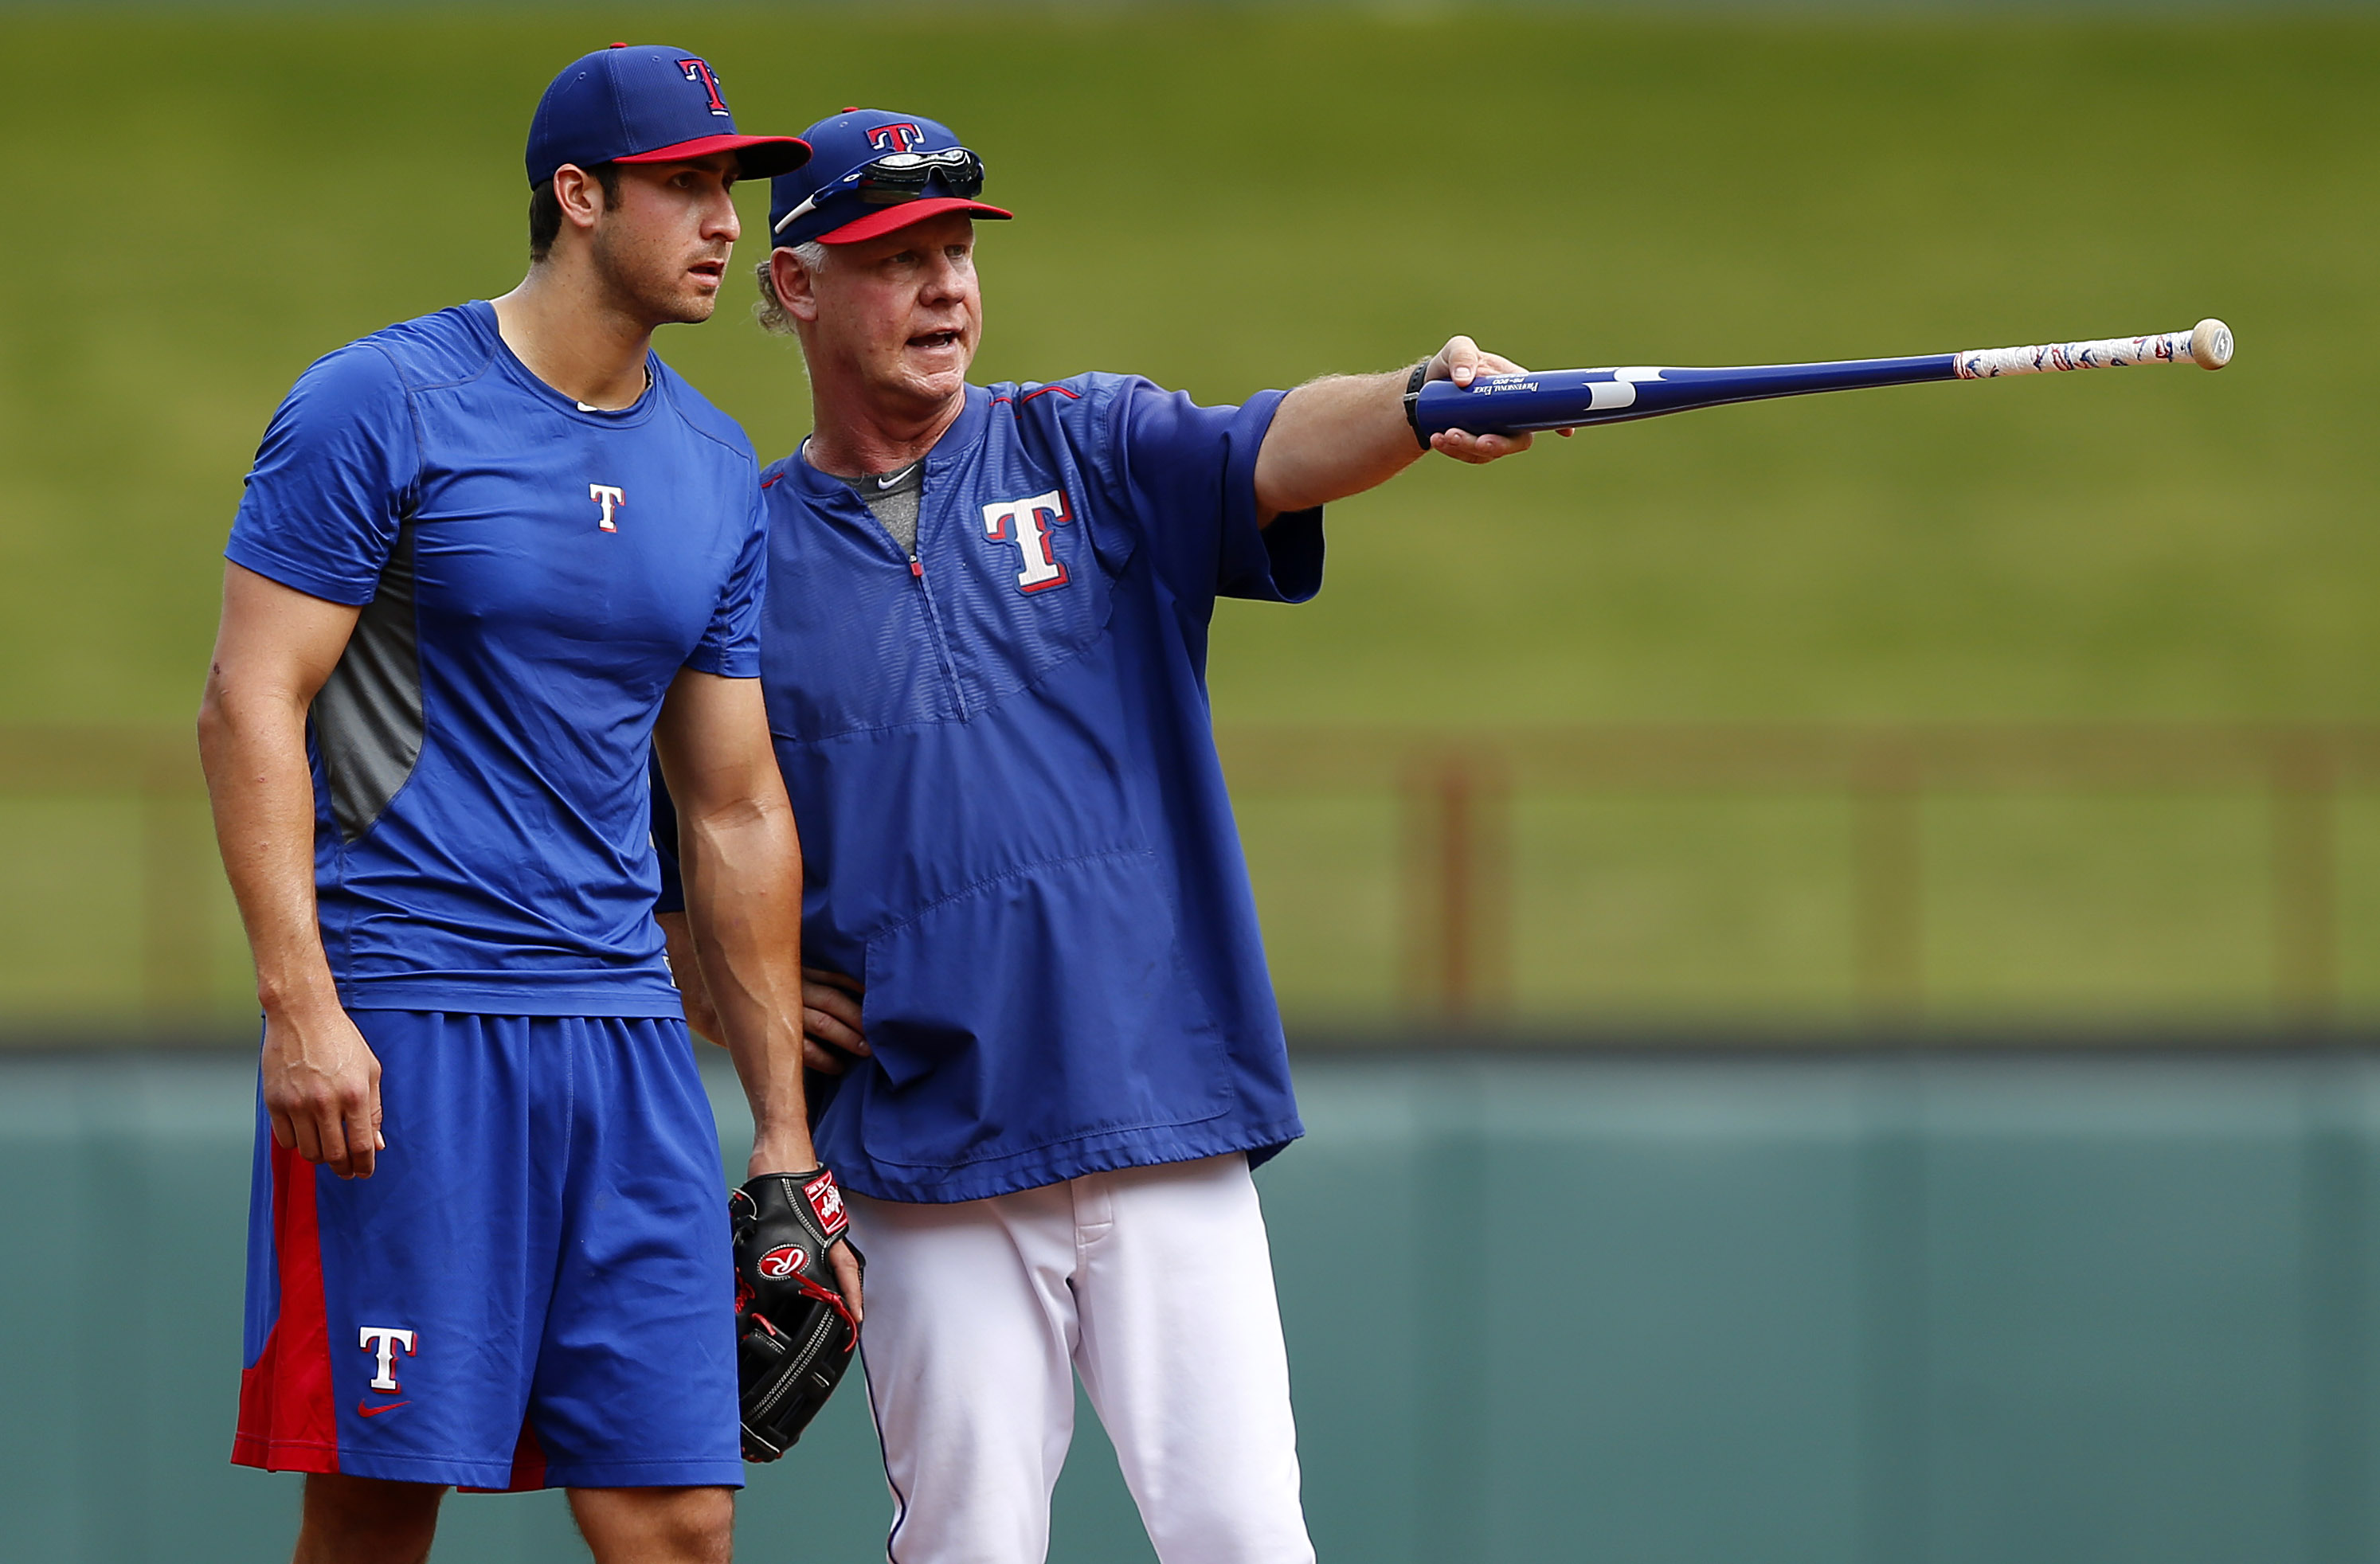 texas rangers batting practice jersey